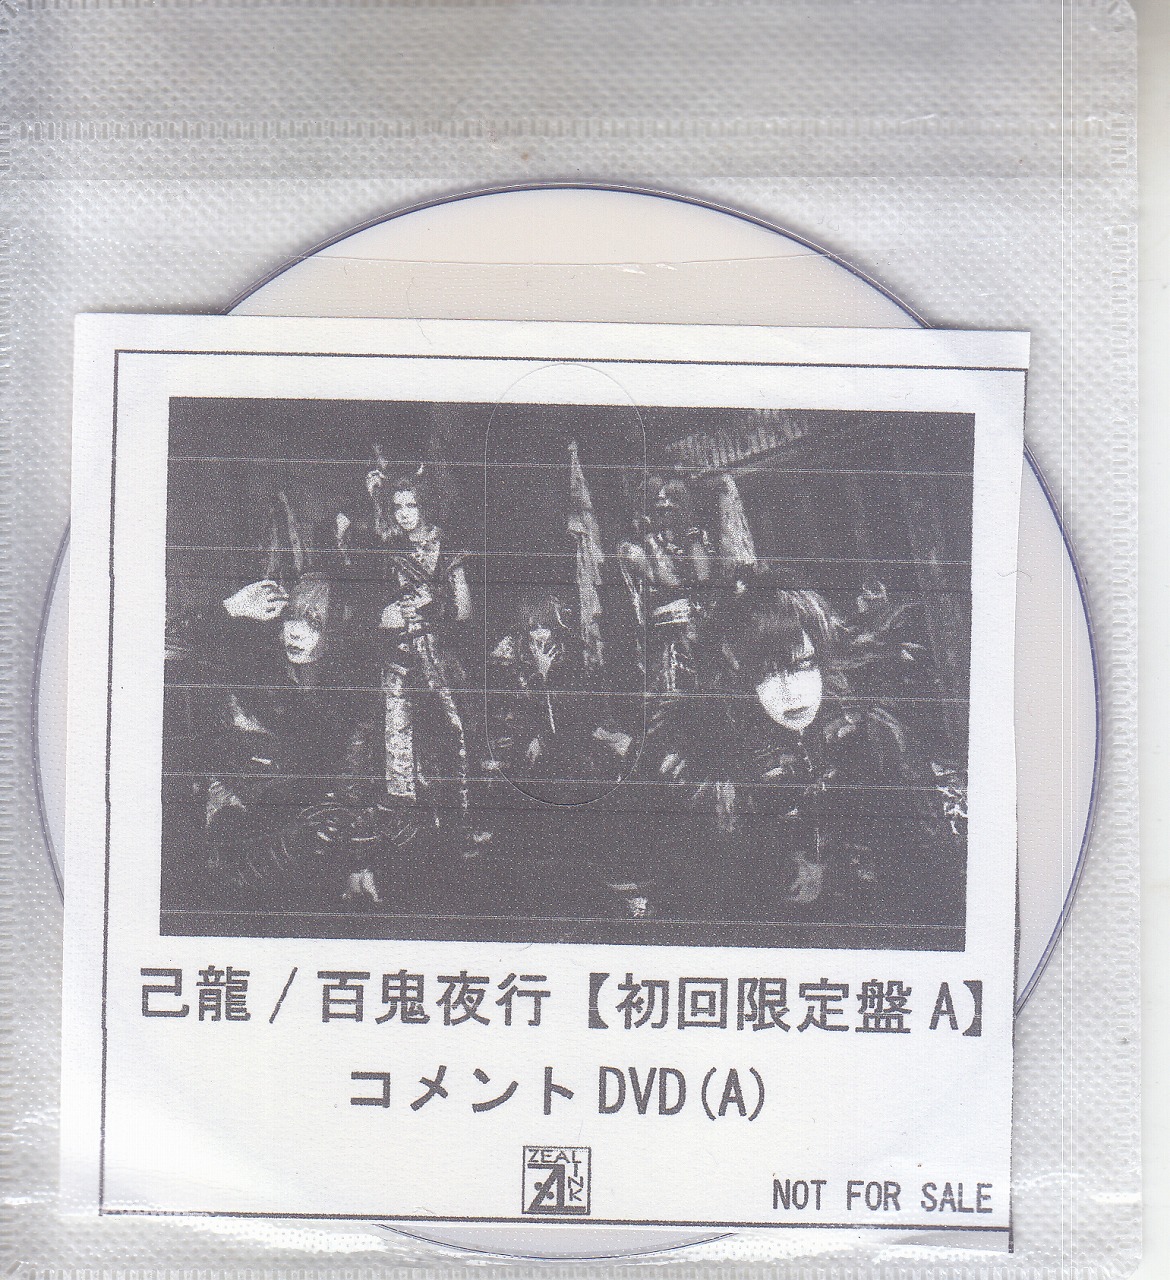 己龍 ( キリュウ )  の DVD 【ZEAL LINK】百鬼夜行【初回限定盤A】コメントDVD(A)